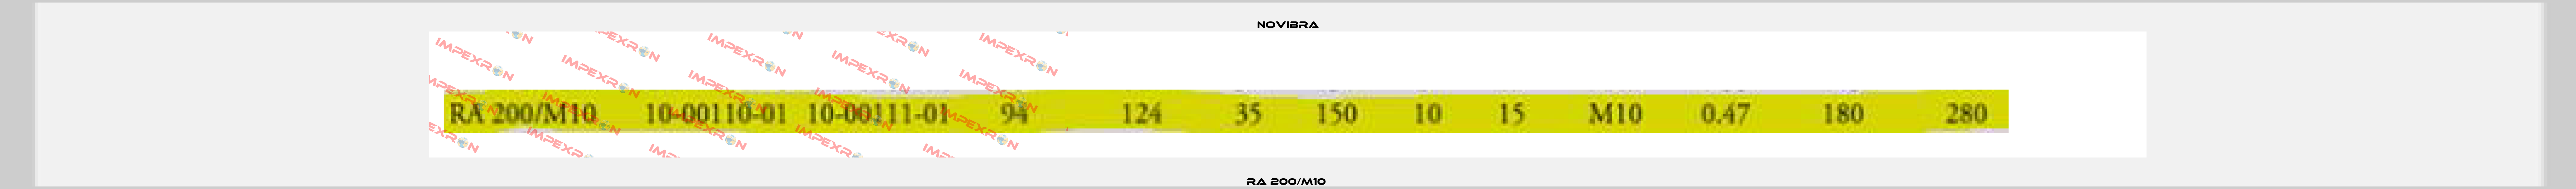 RA 200/M10  Novibra